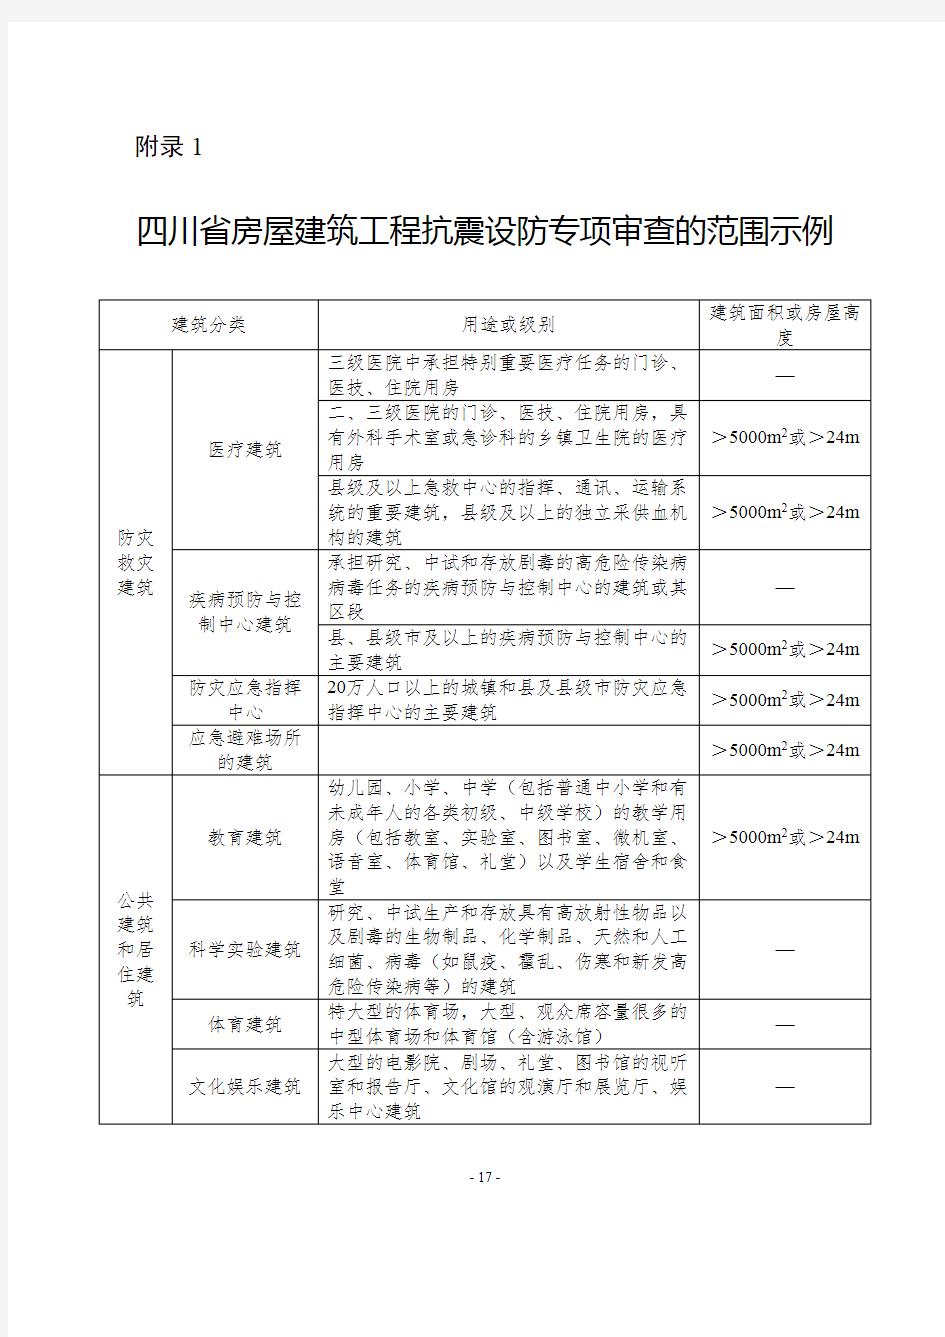 四川省房屋建筑工程抗震设防专项审查的范围示例、送审报告内容要求、专家组意见